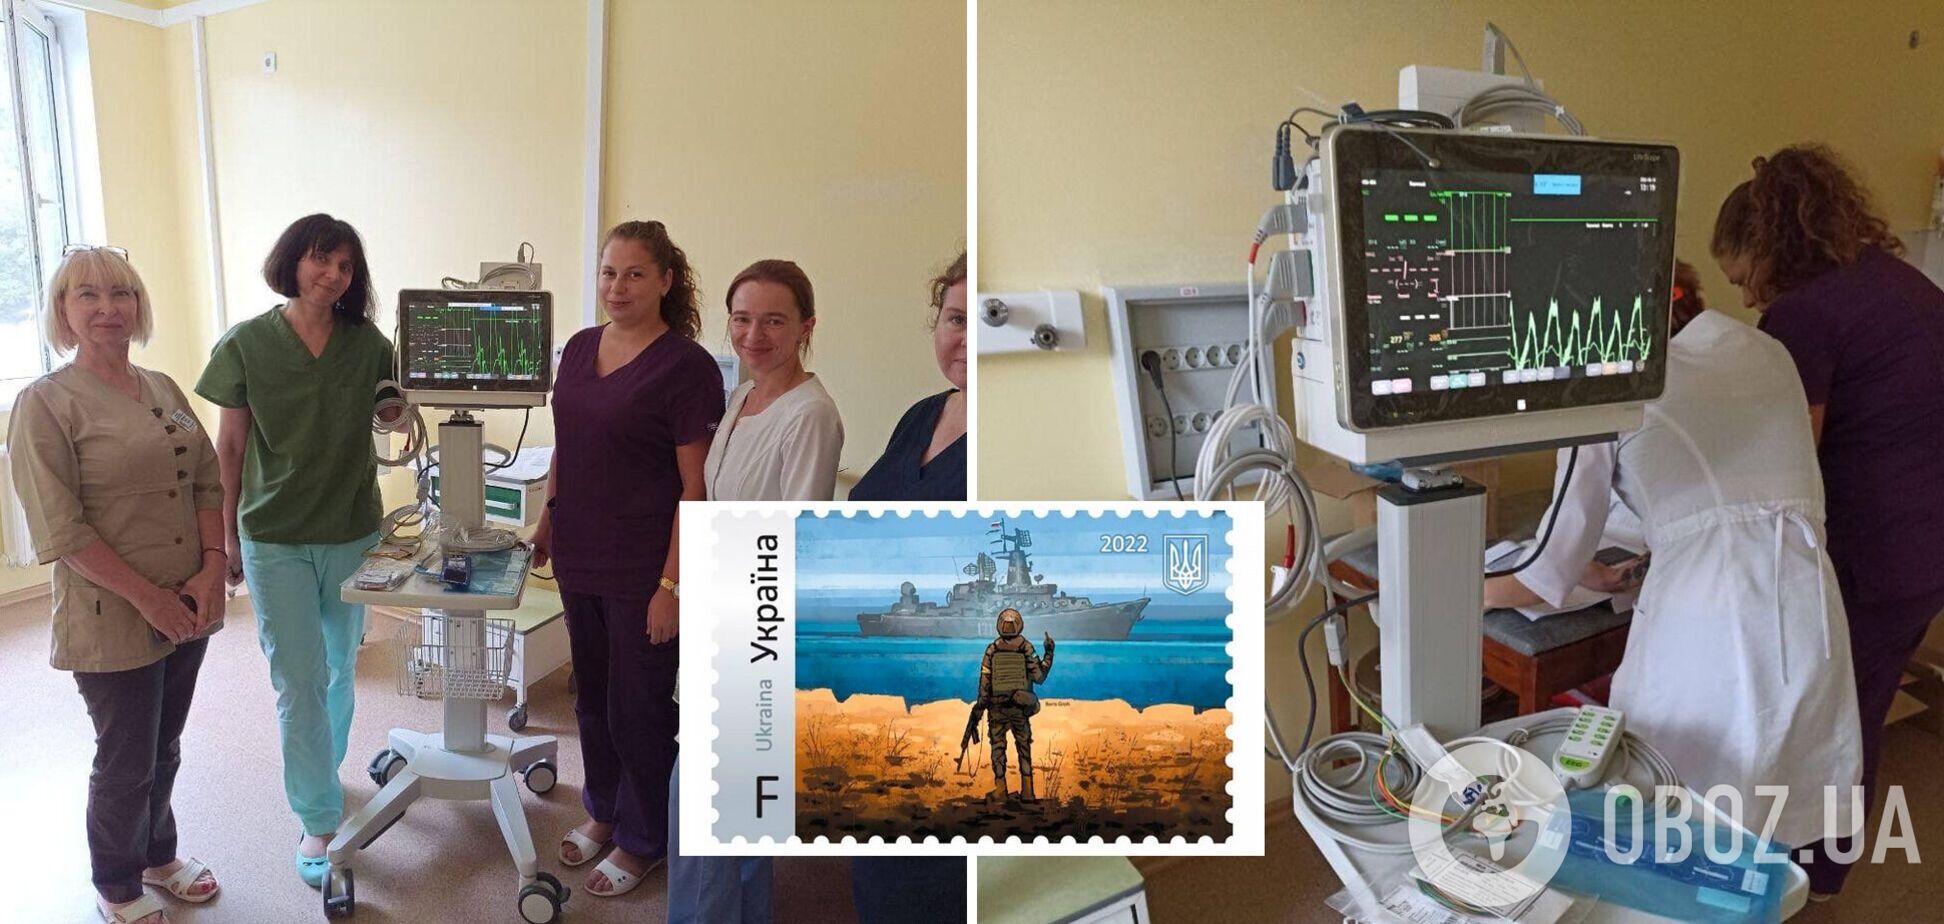 Електроенцефалограф, на який було оголошено збір коштів, уже в дитячій лікарні Миколаєва